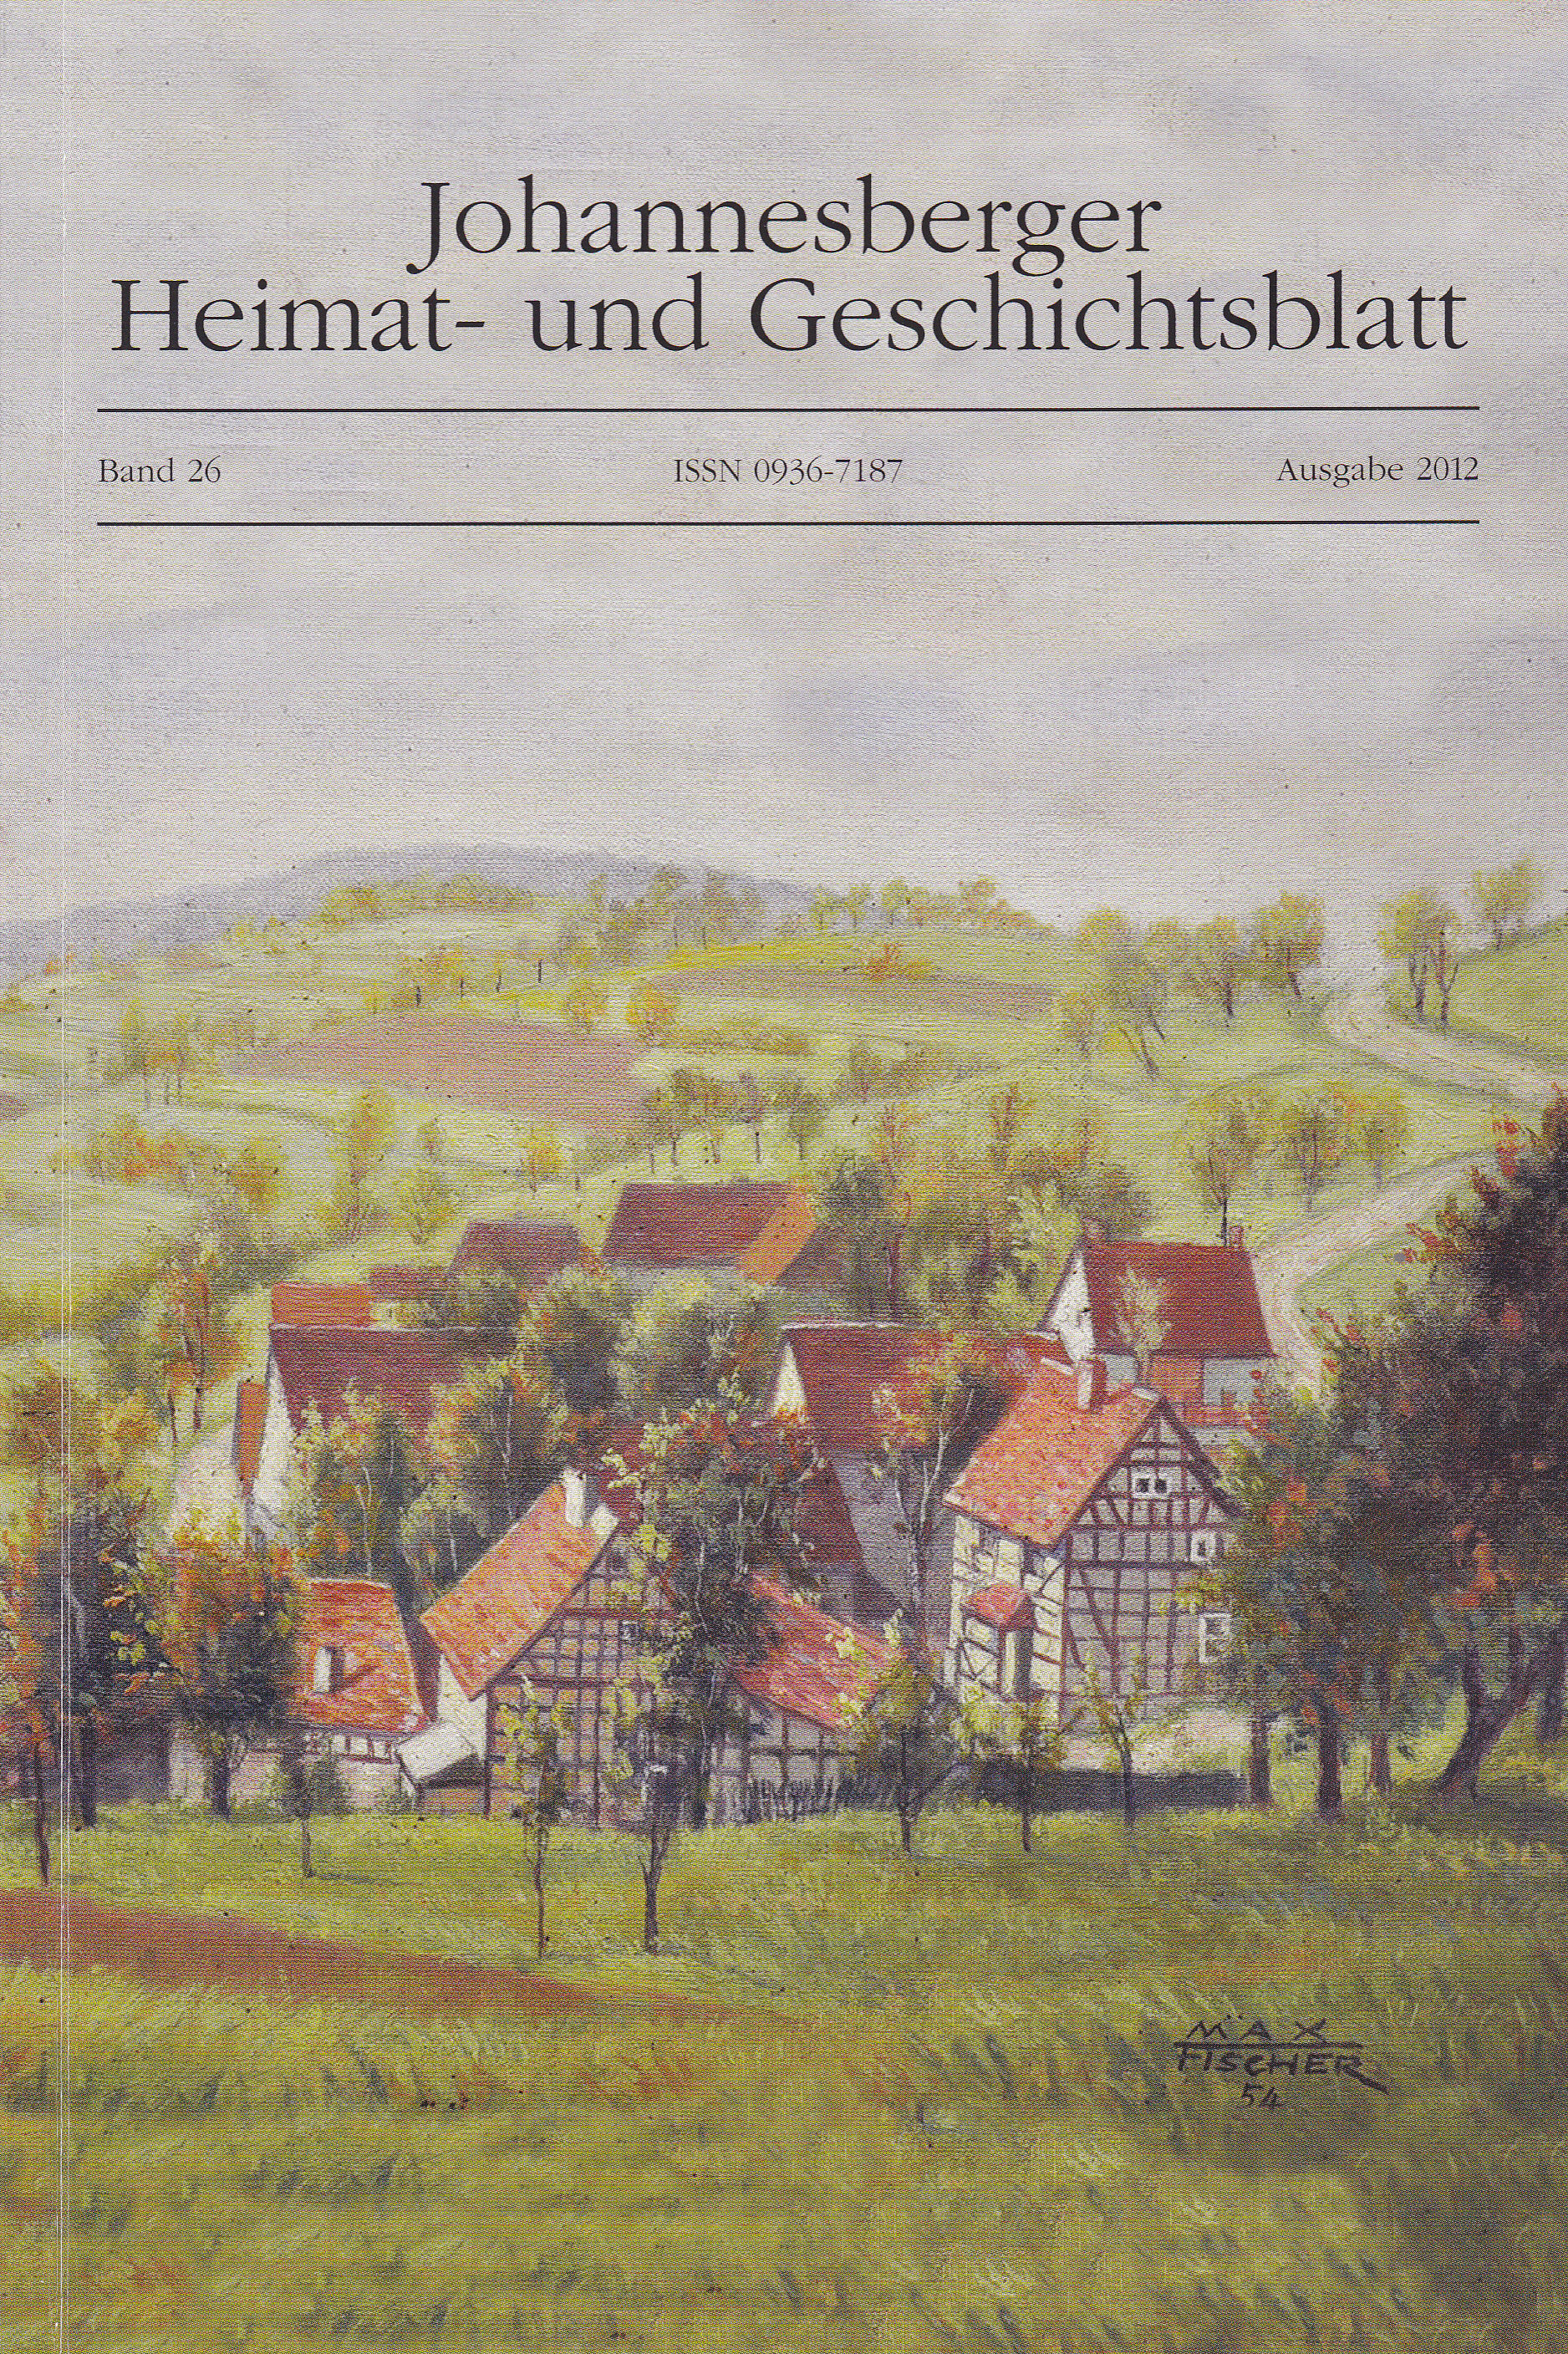 Dieses Bild zeigt das Cover des Jahrbuches 2012